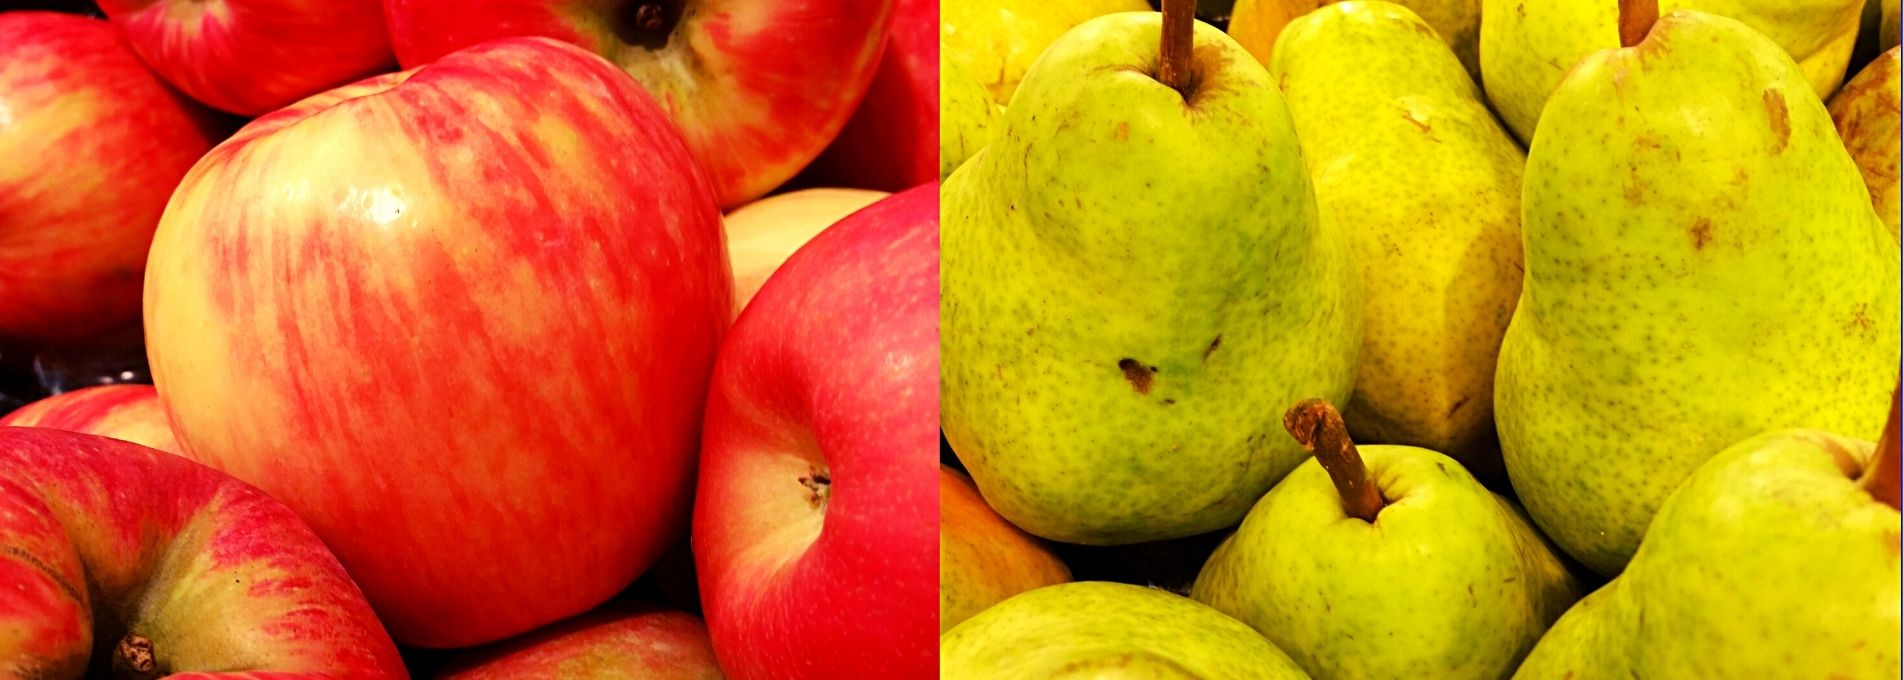 Pommes et poires : des variétés qui éveillent la curiosité !